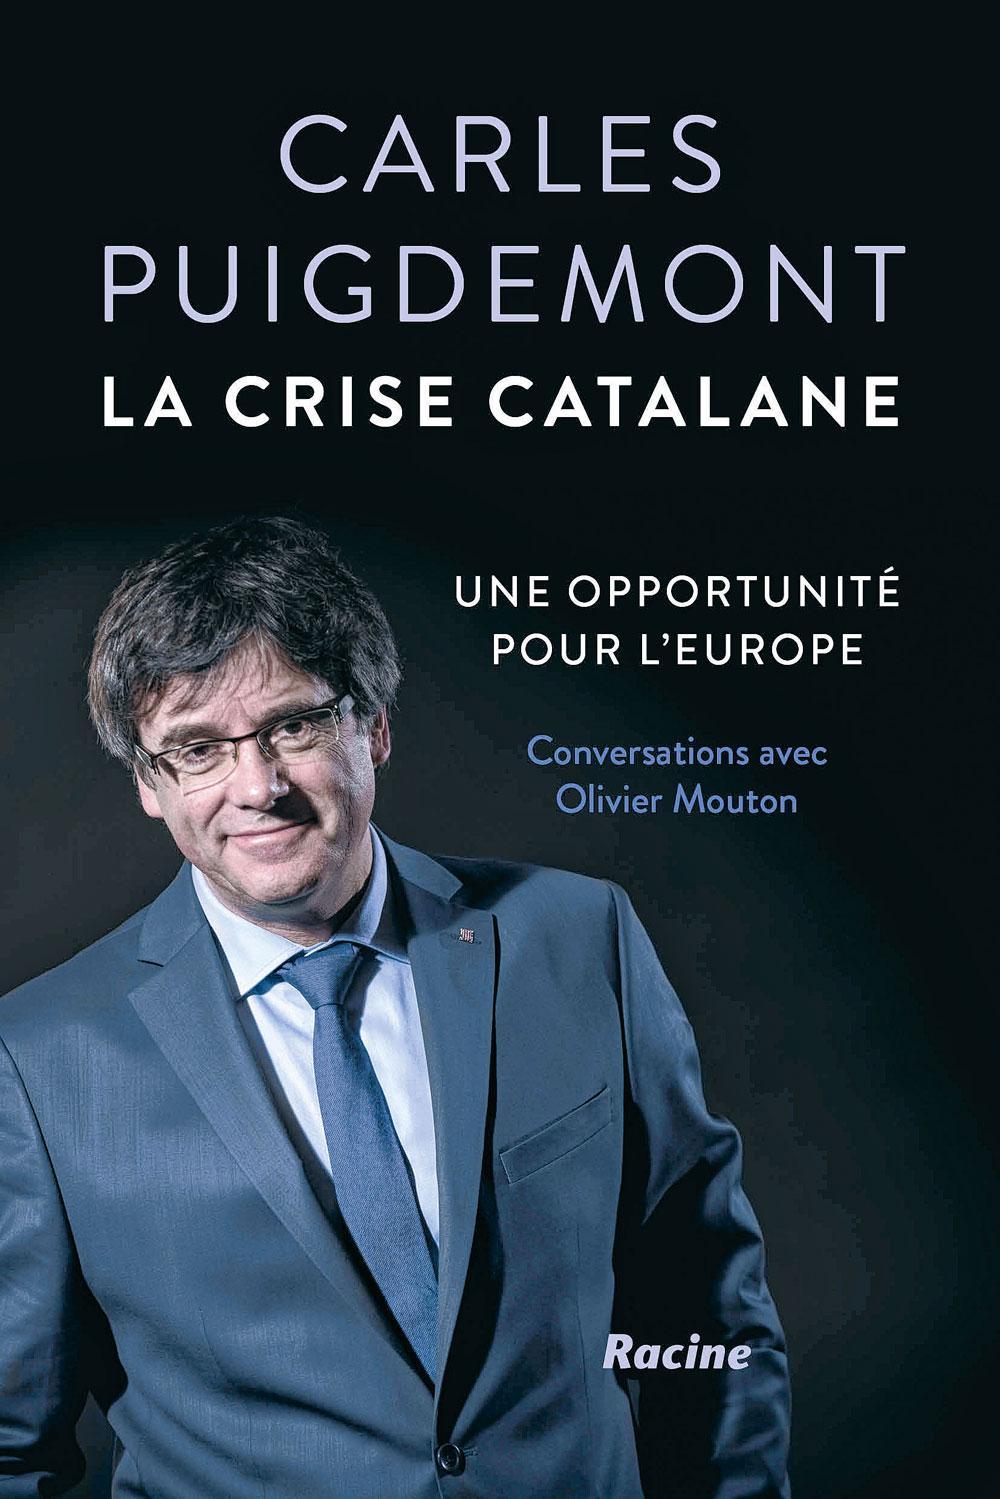 (1) La crise catalane, une opportunité pour l'Europe, conversations avec Olivier Mouton, éd. Racine, 192 p.